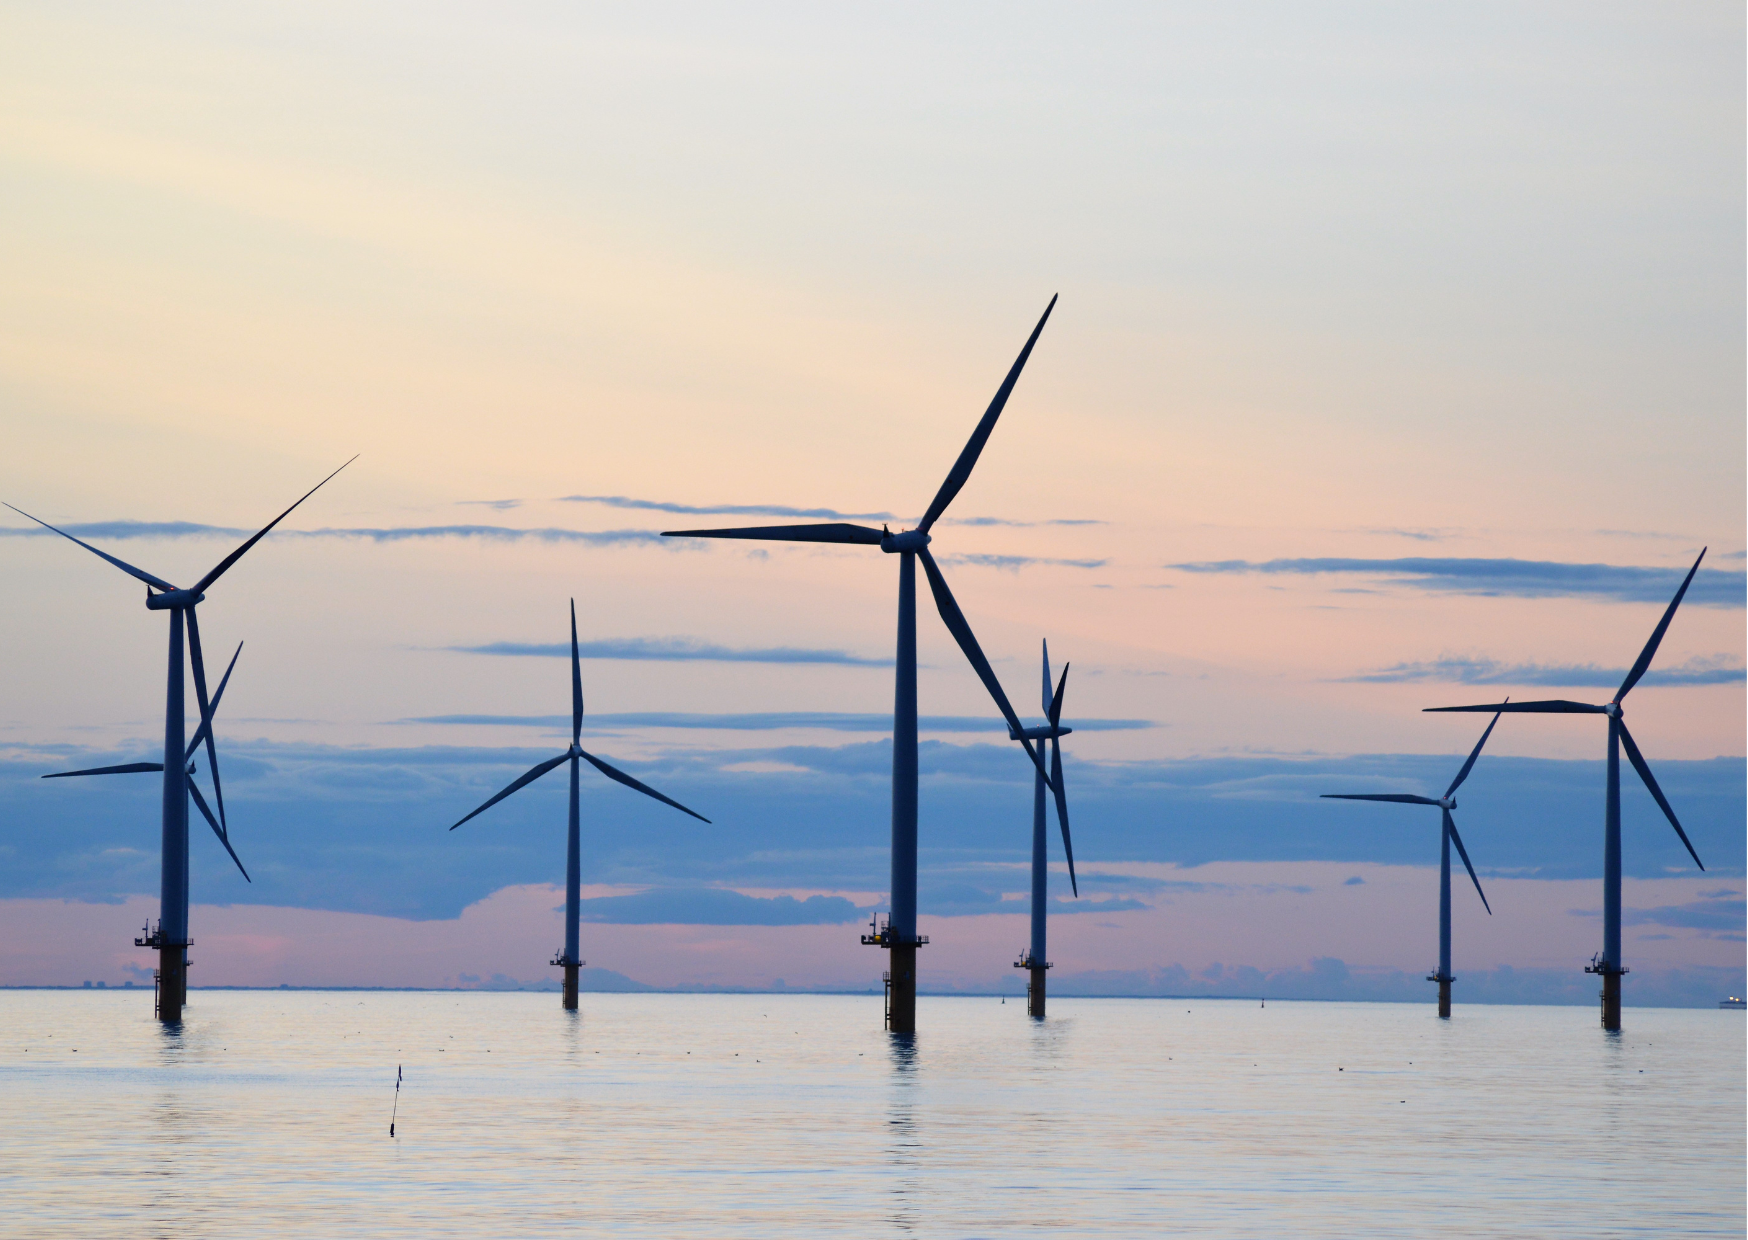 Morska energetyka wiatrowa – studia podyplomowe Uniwersytetu Gdańskiego